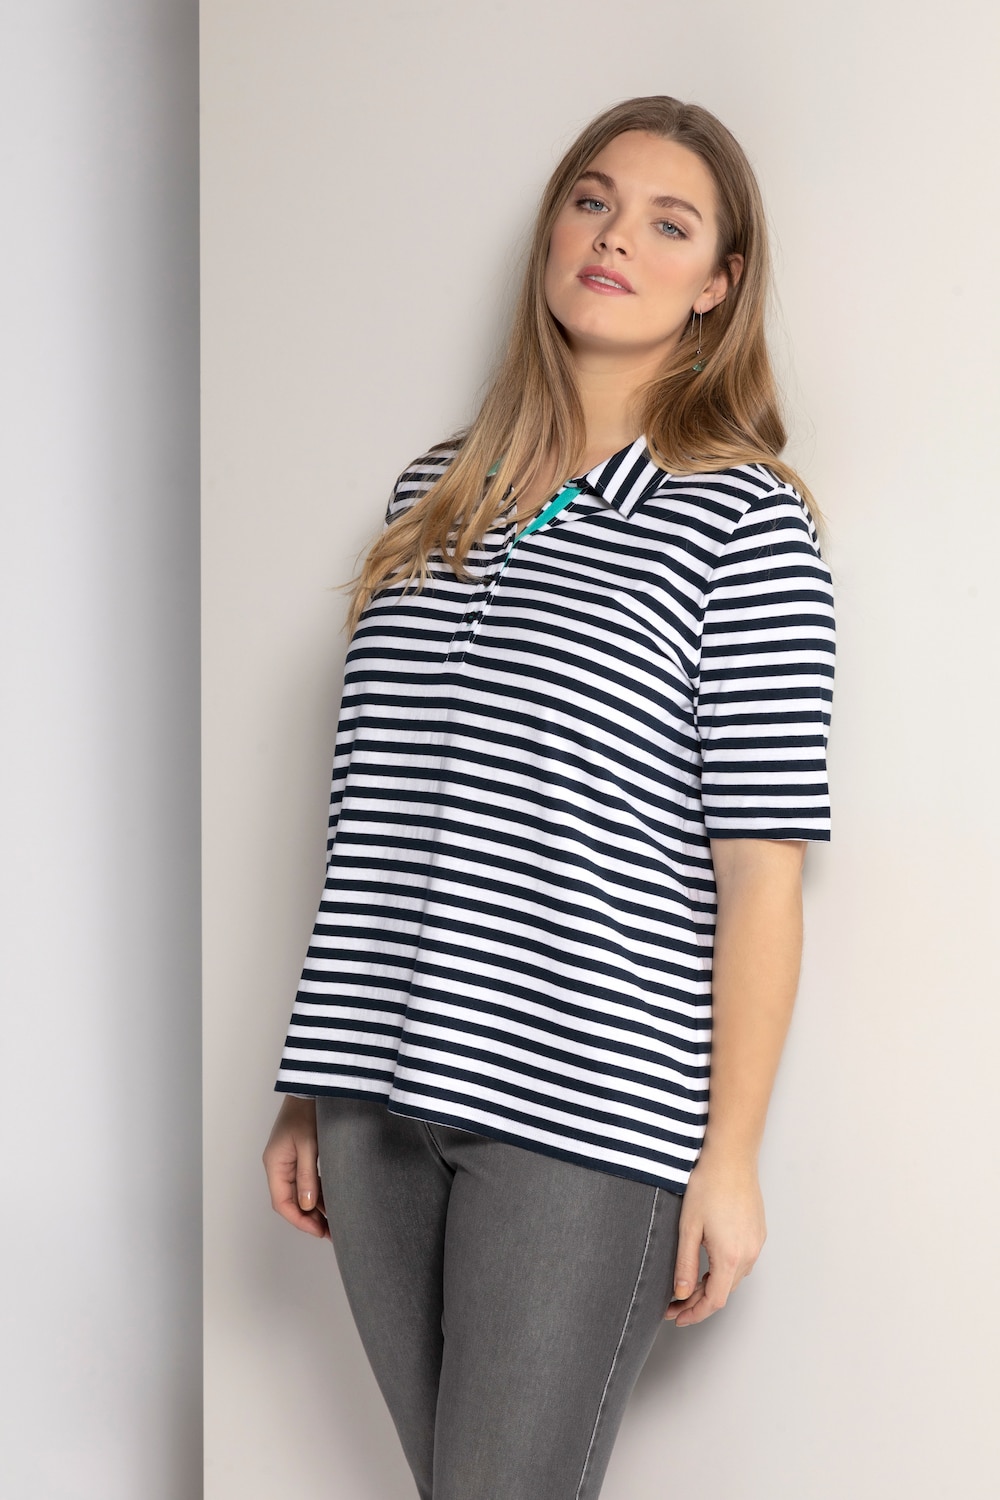 Plus Size Contrast Trim Polo Shirt, Woman, white, size: 20/22, cotton, Ulla Popken